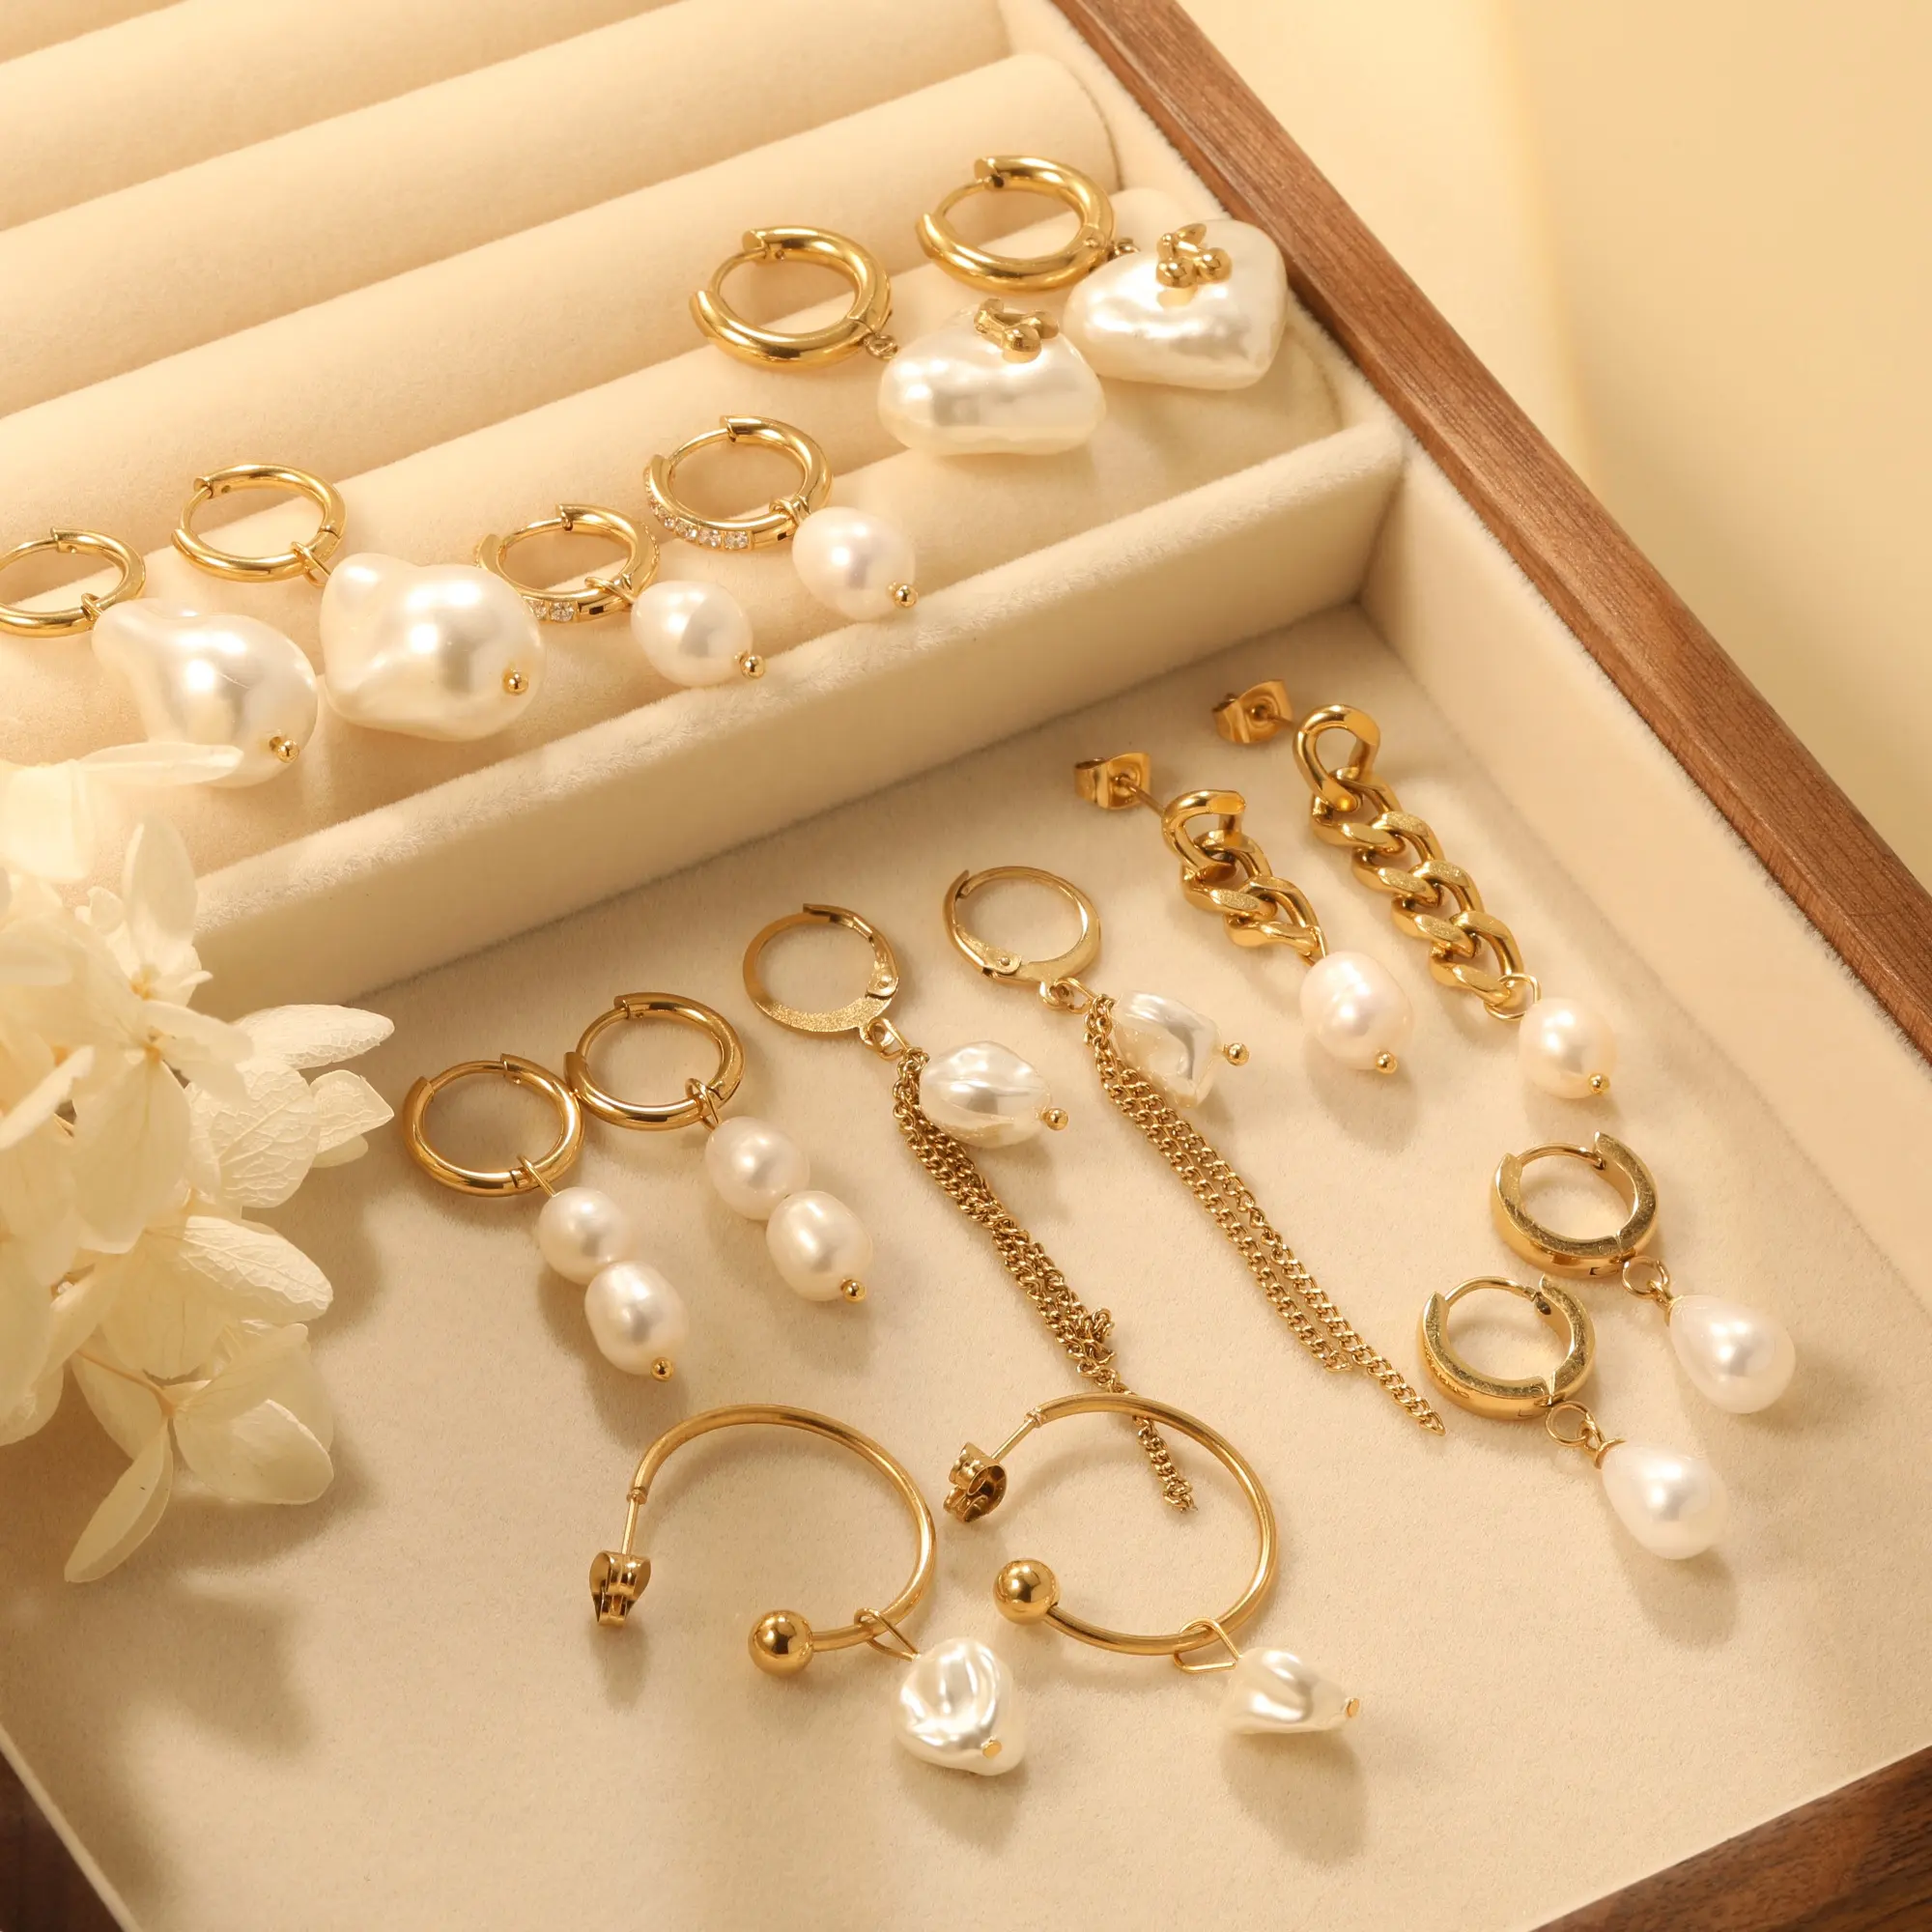 Di alta qualità 18K oro PVD placcato in acciaio inox orecchini all'ingrosso personalizzati di moda gioielli orecchini per le donne orecchini di perle